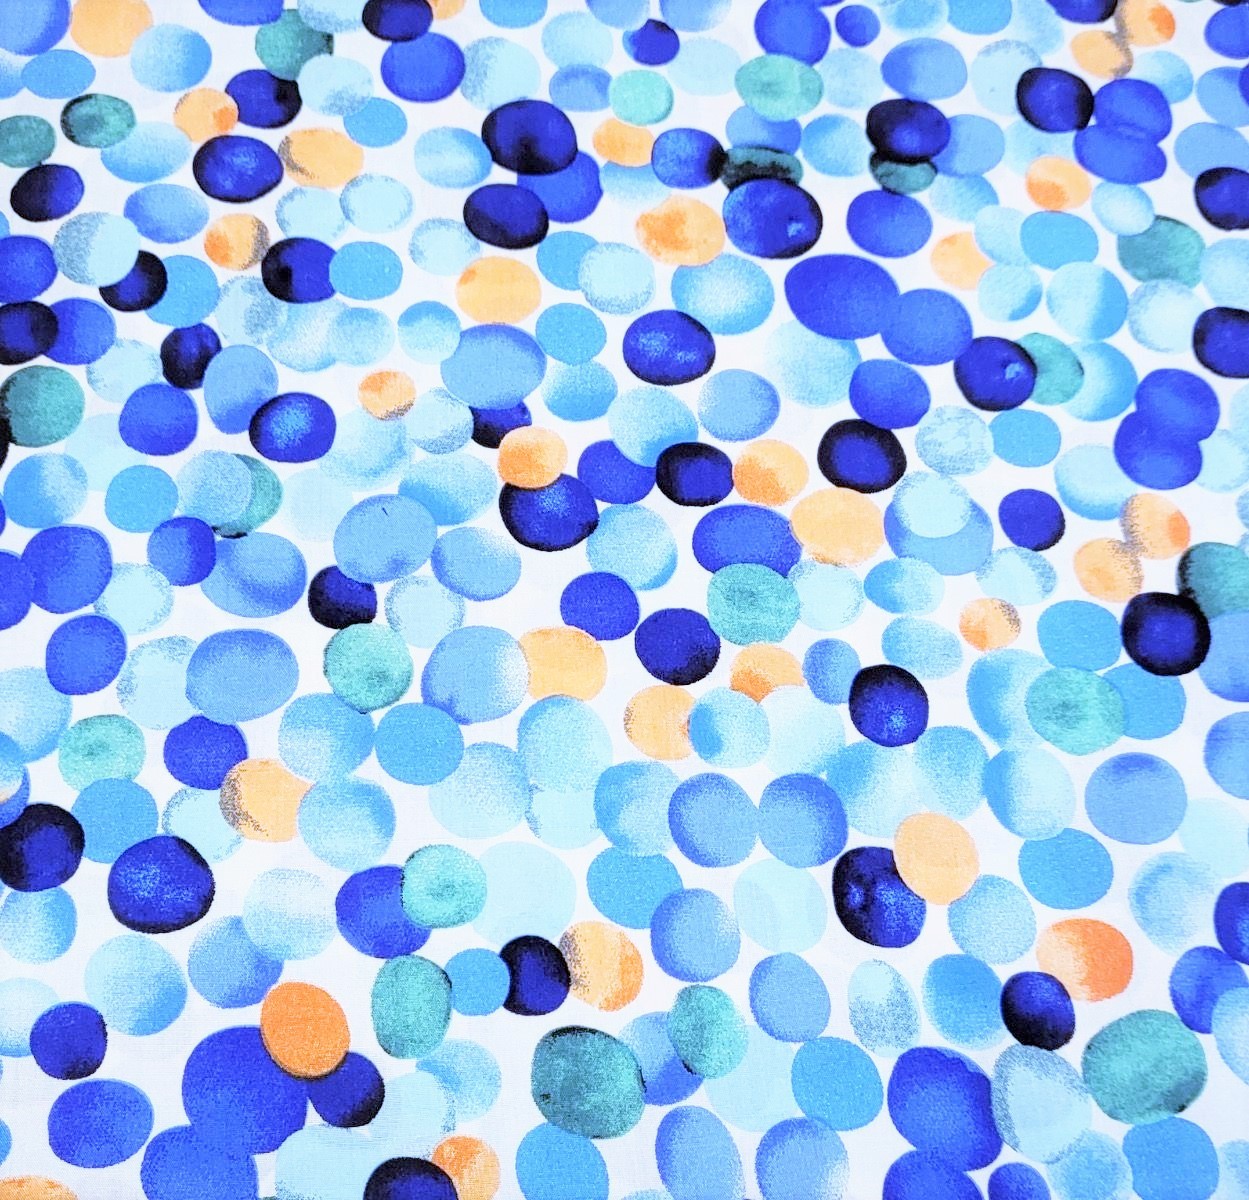 Viskose Lana Digital mit Dots - weiß/blau